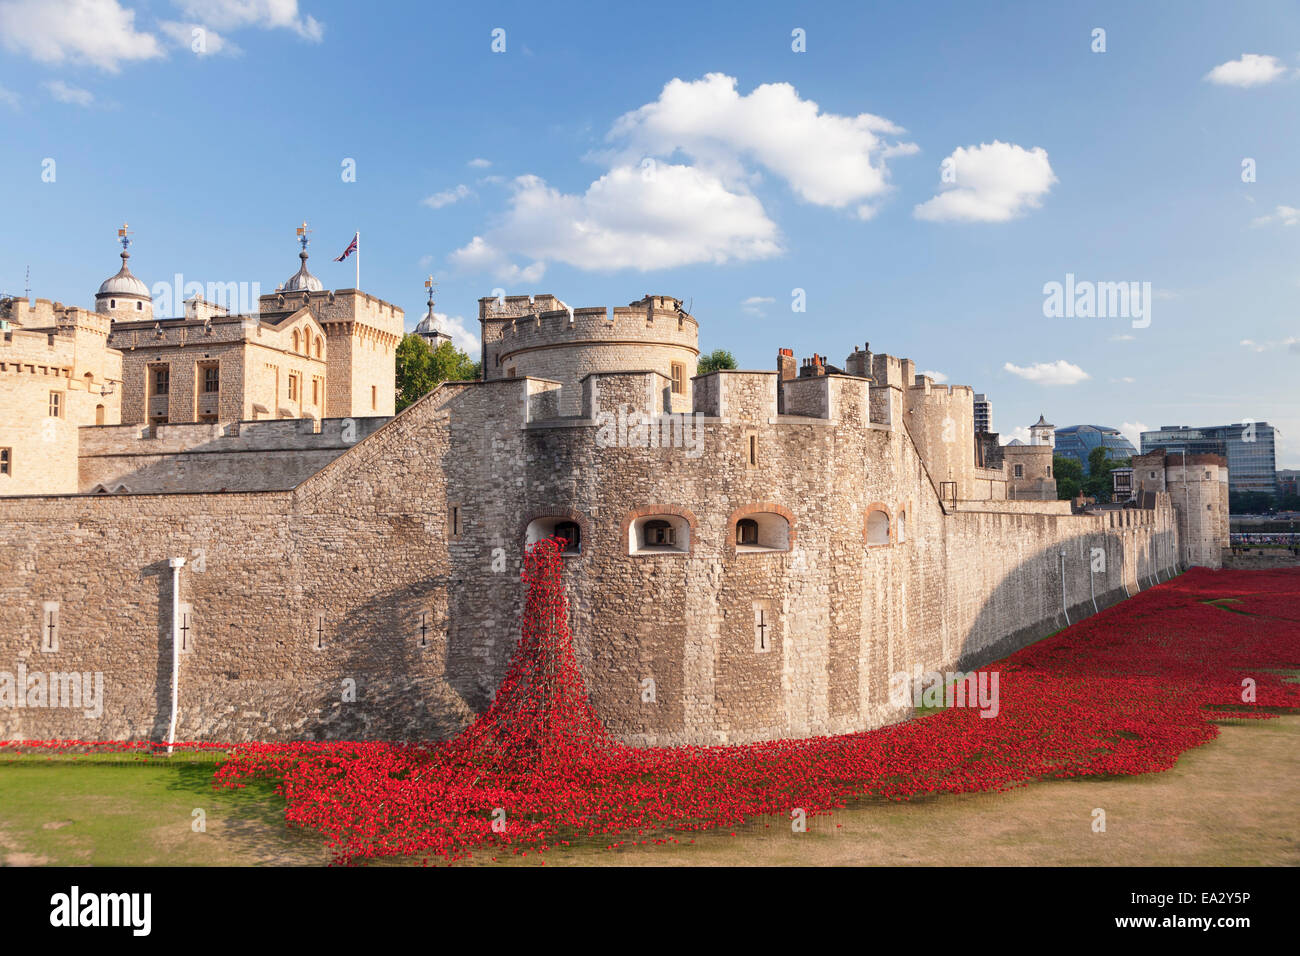 La Torre de Londres, la instalación sangre arrasaron tierras y mares rojos, memorial de la I Guerra Mundial, la ciudad de Londres, Inglaterra, Reino Unido. Foto de stock